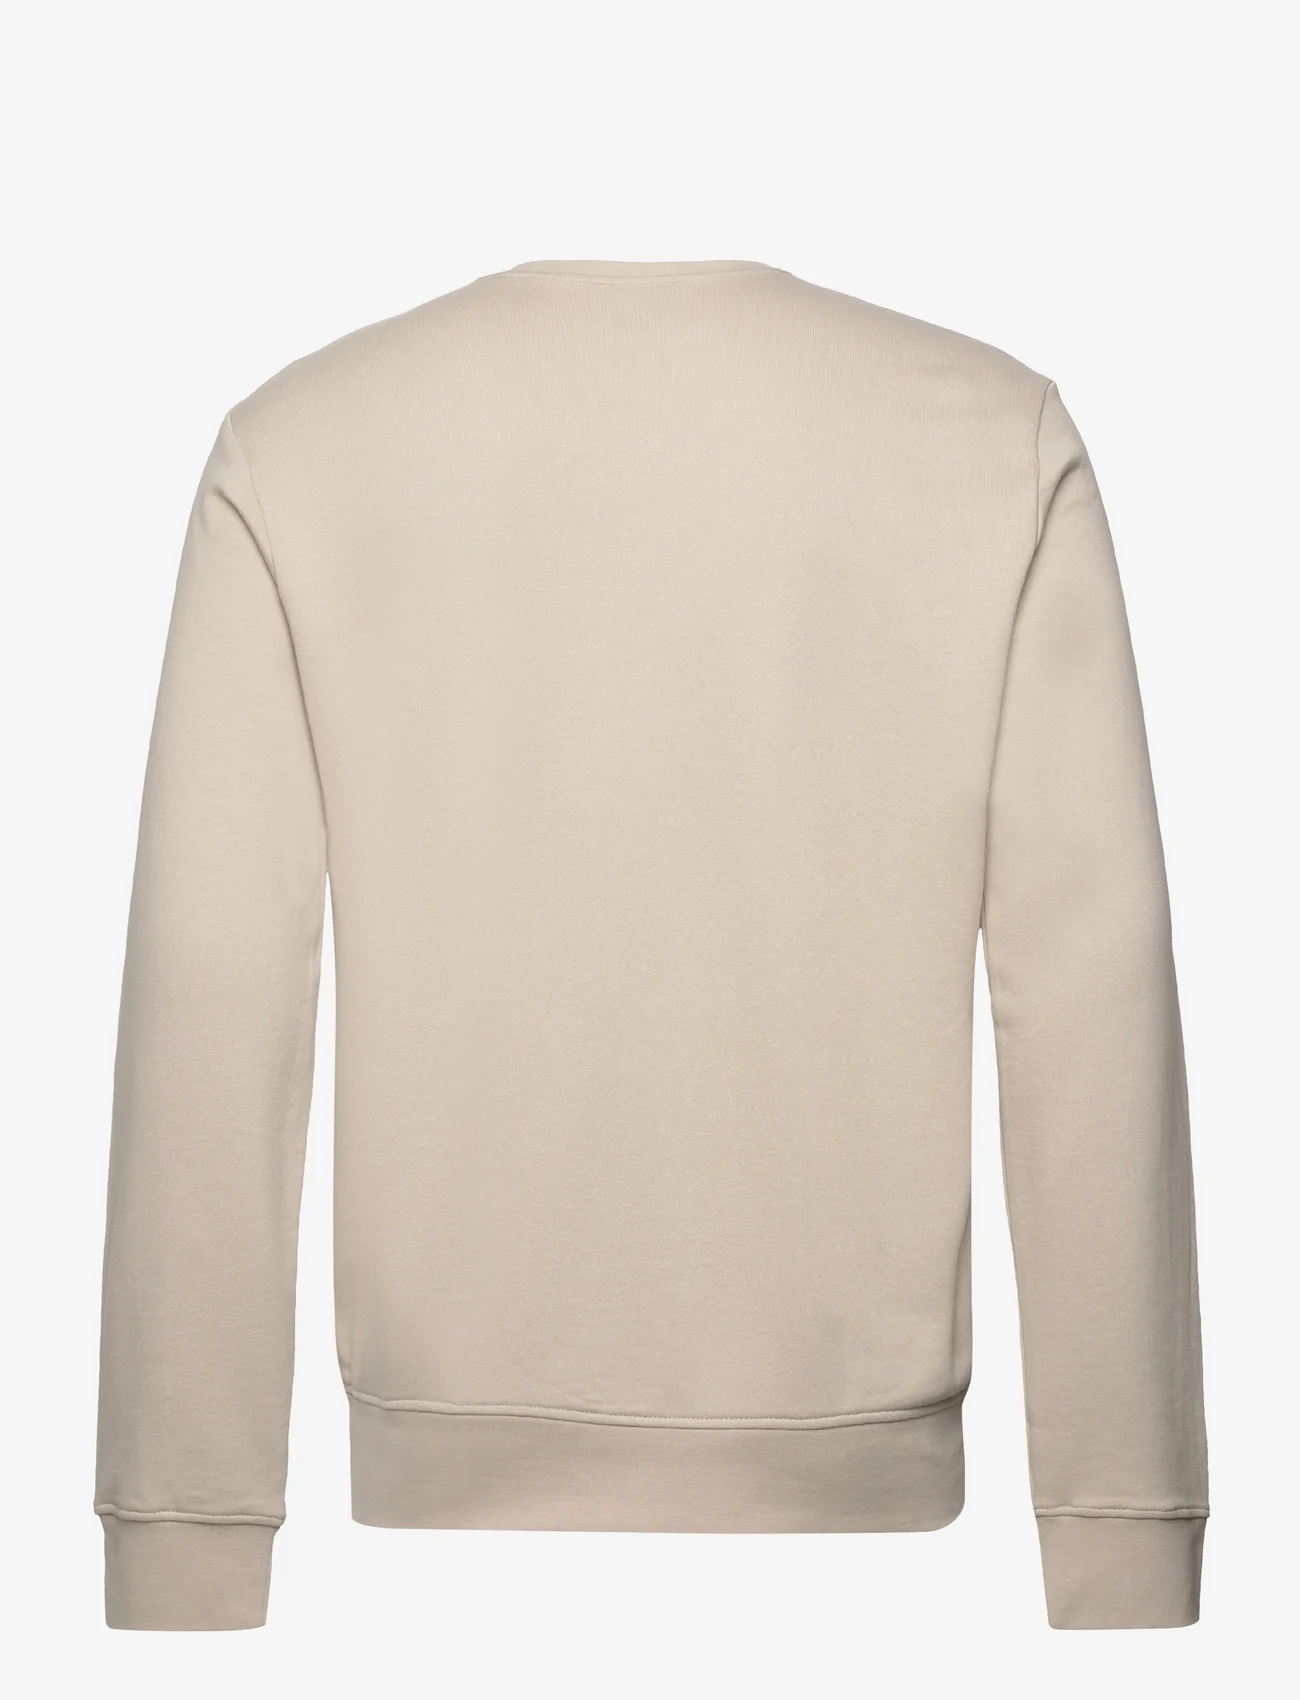 Armani Exchange - SWEATSHIRTS - sweatshirts - 1934-silver lining - 1